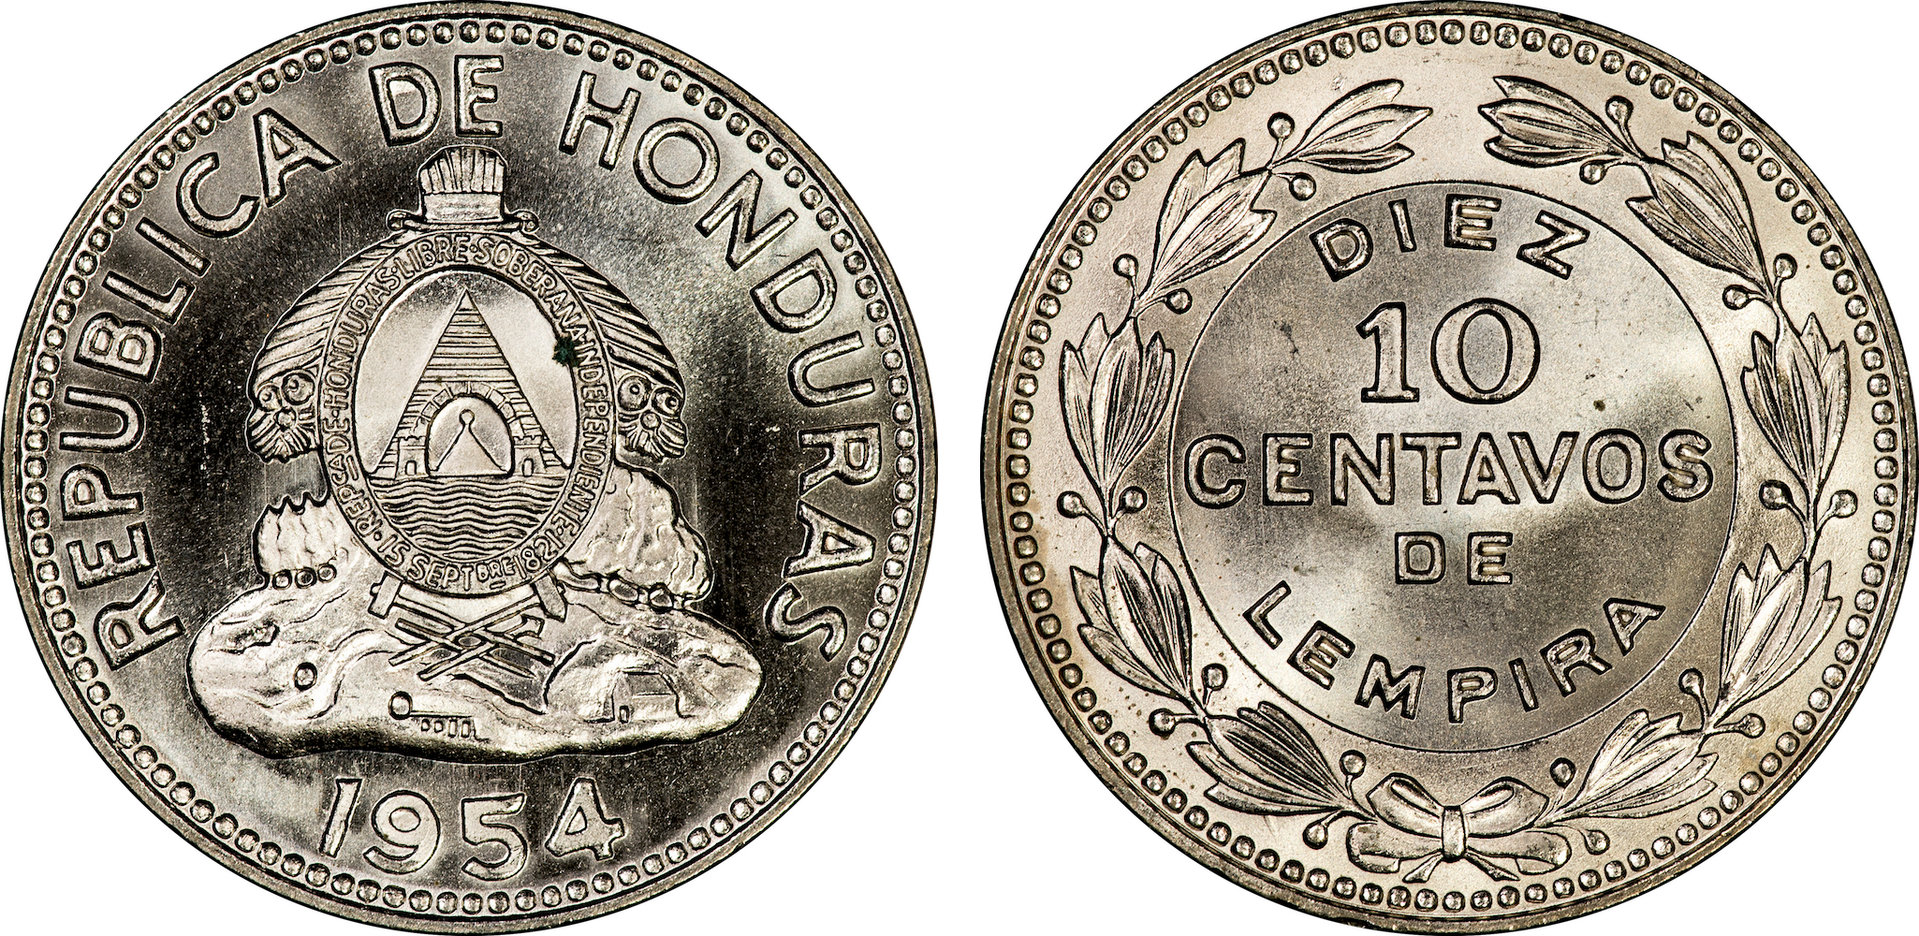 Honduras - 1954 10 Centavos.jpg